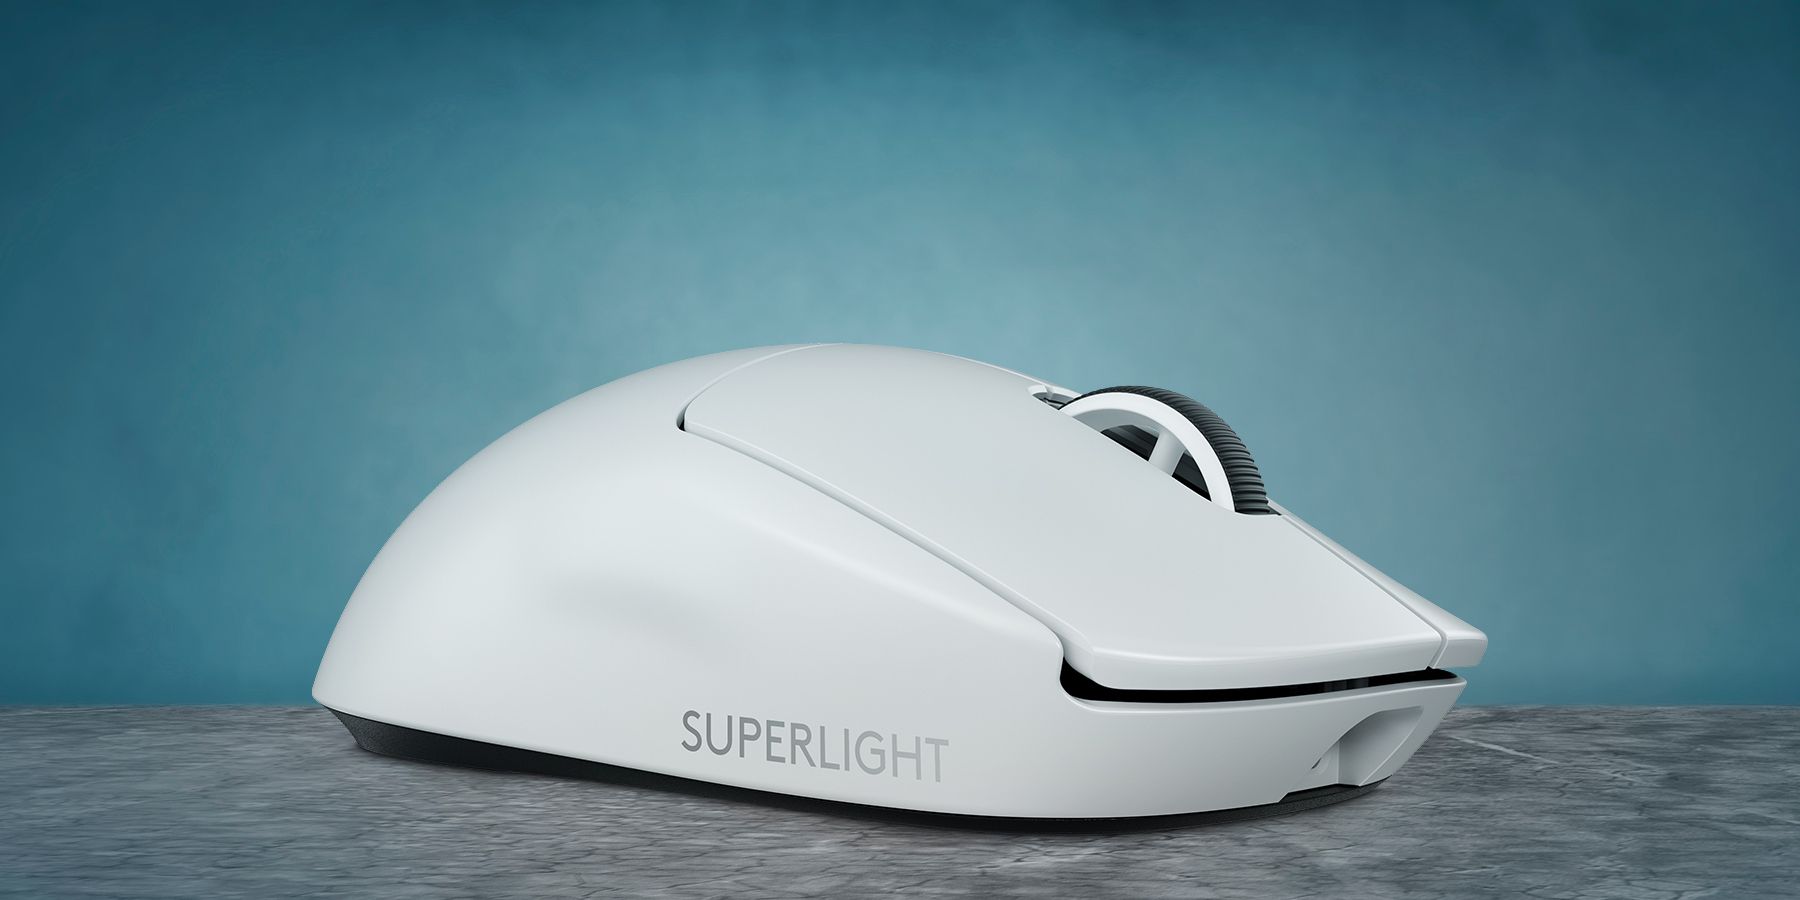 Logitech G Pro X Superlight 2 Mouse Review